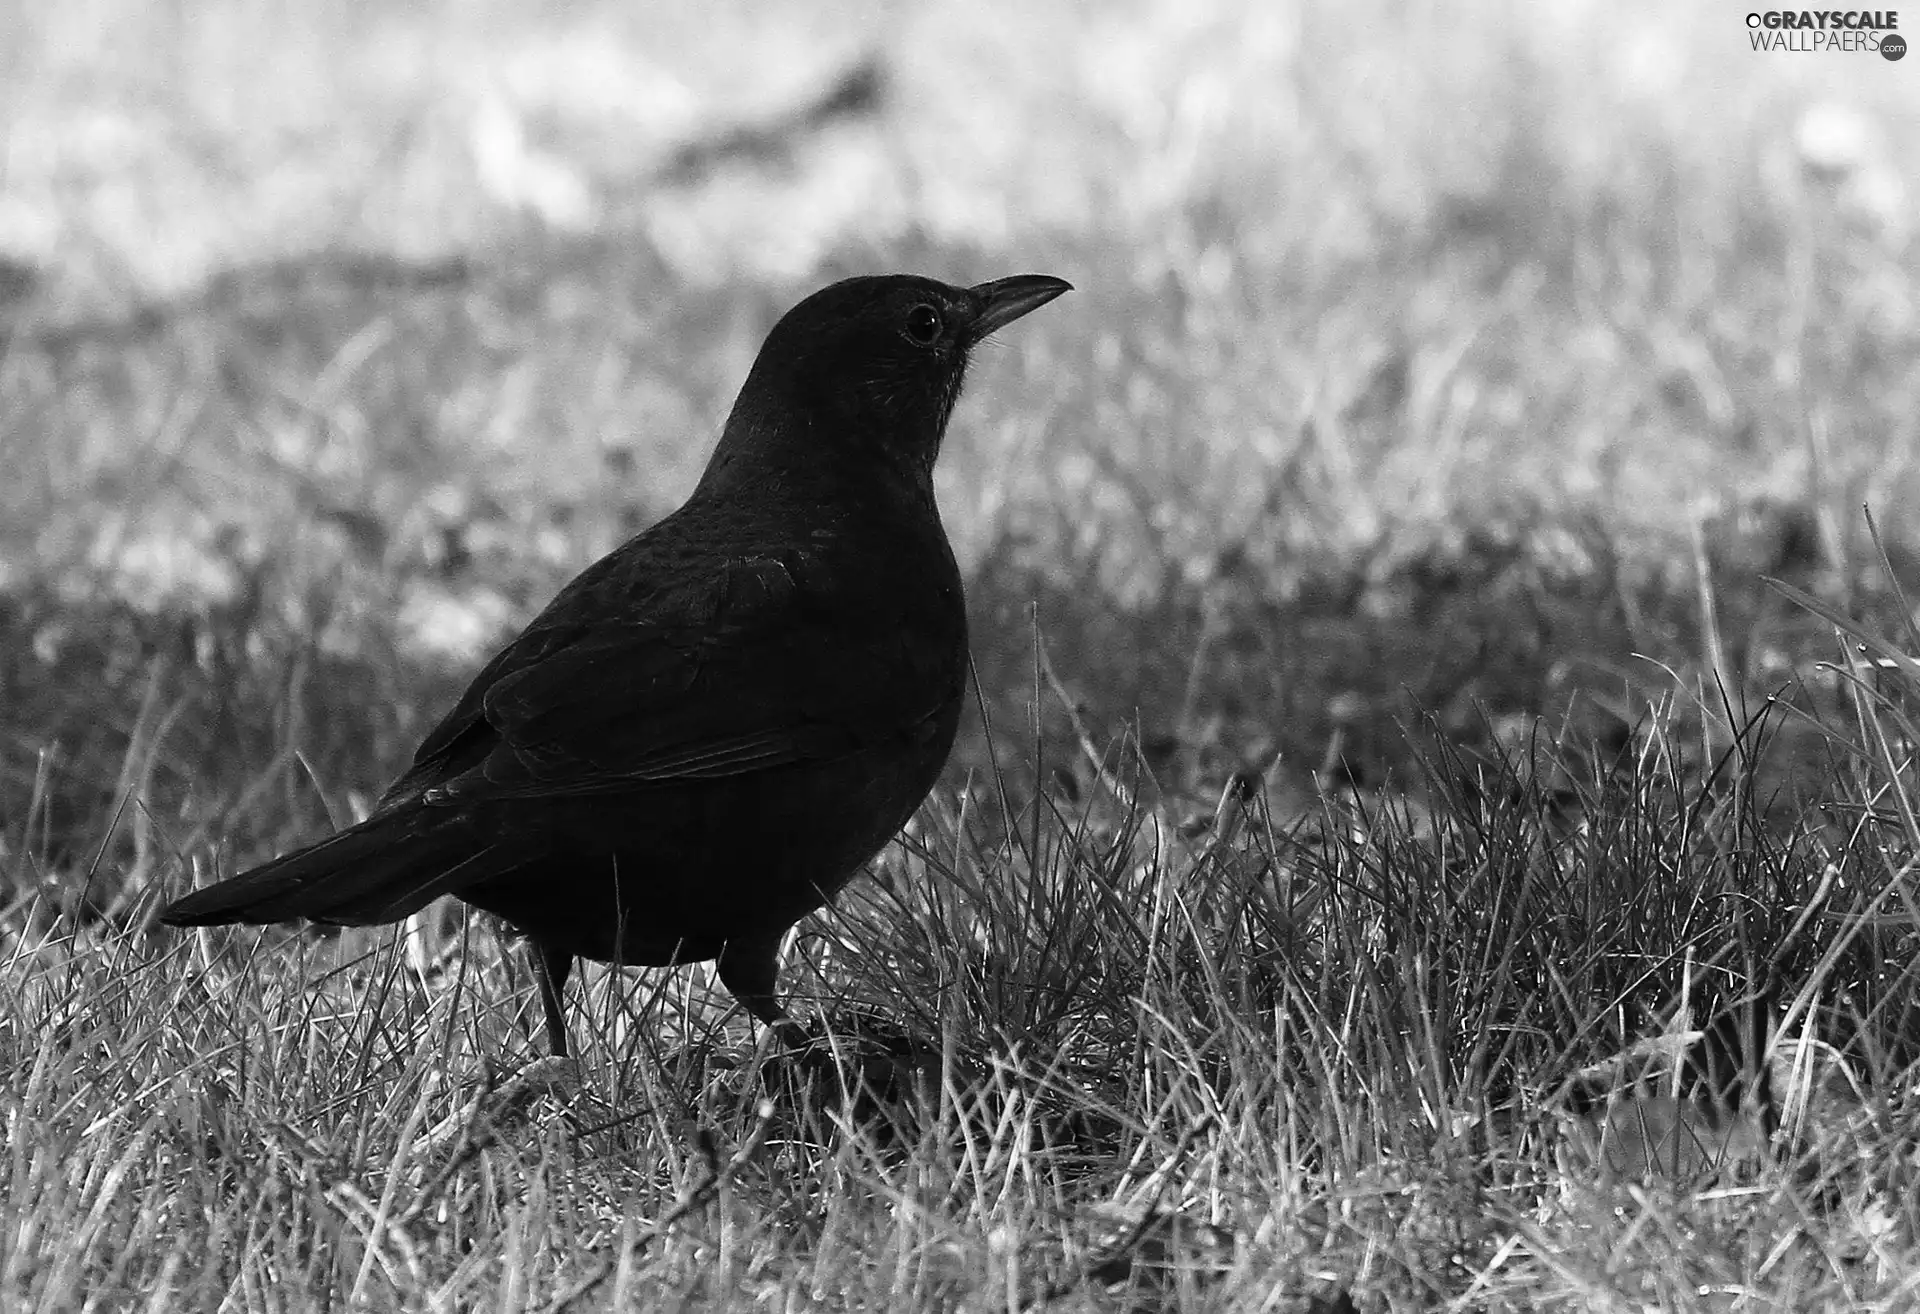 Blackbird, grass